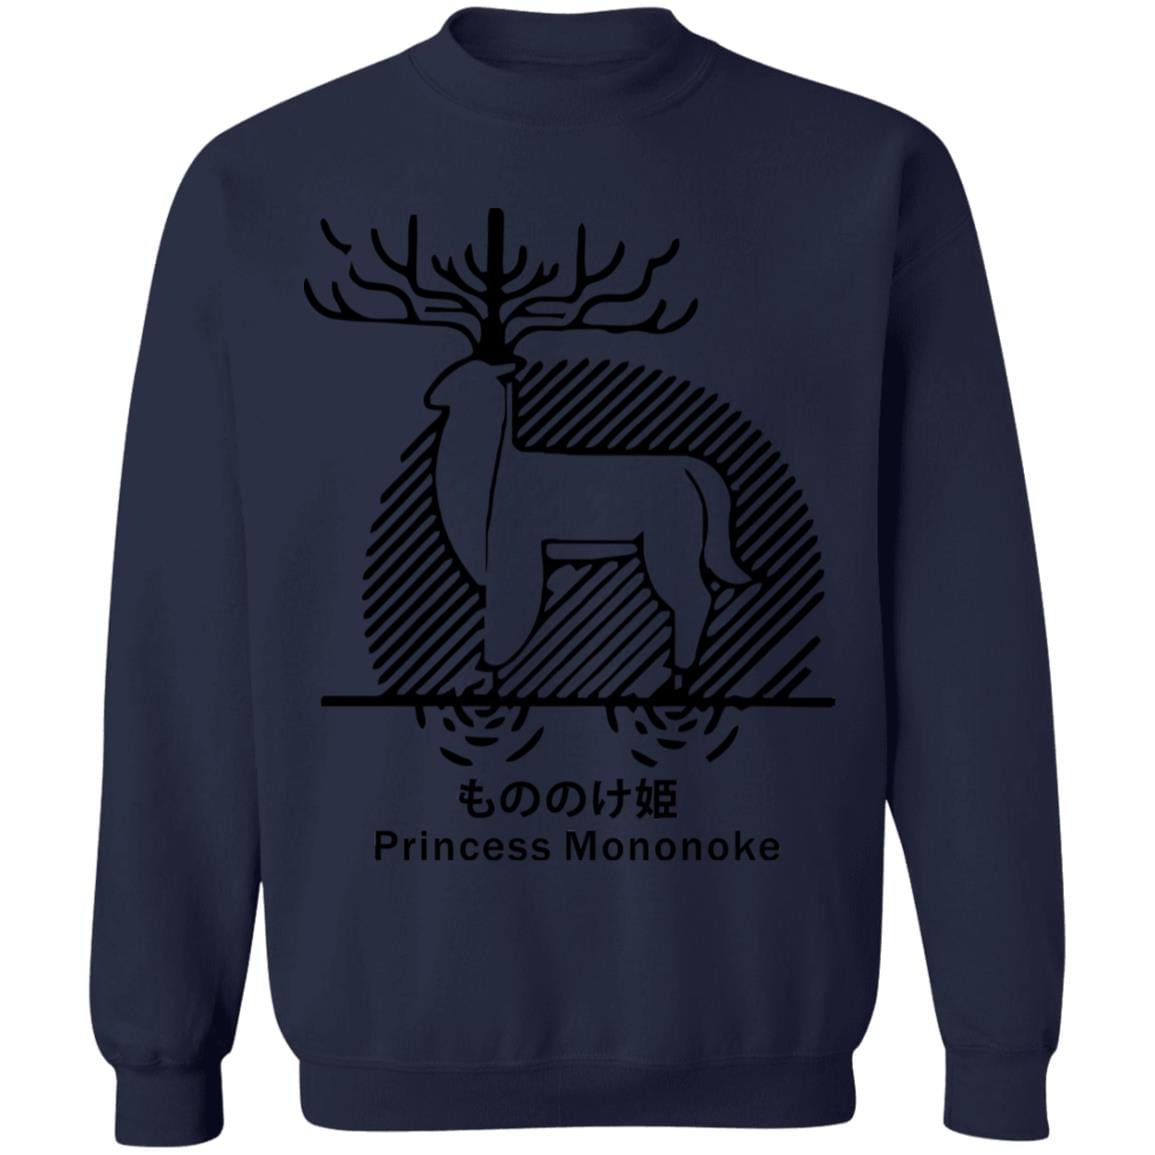 Princess Mononoke – Shishigami Line Art Sweatshirt Unisex Ghibli Store ghibli.store